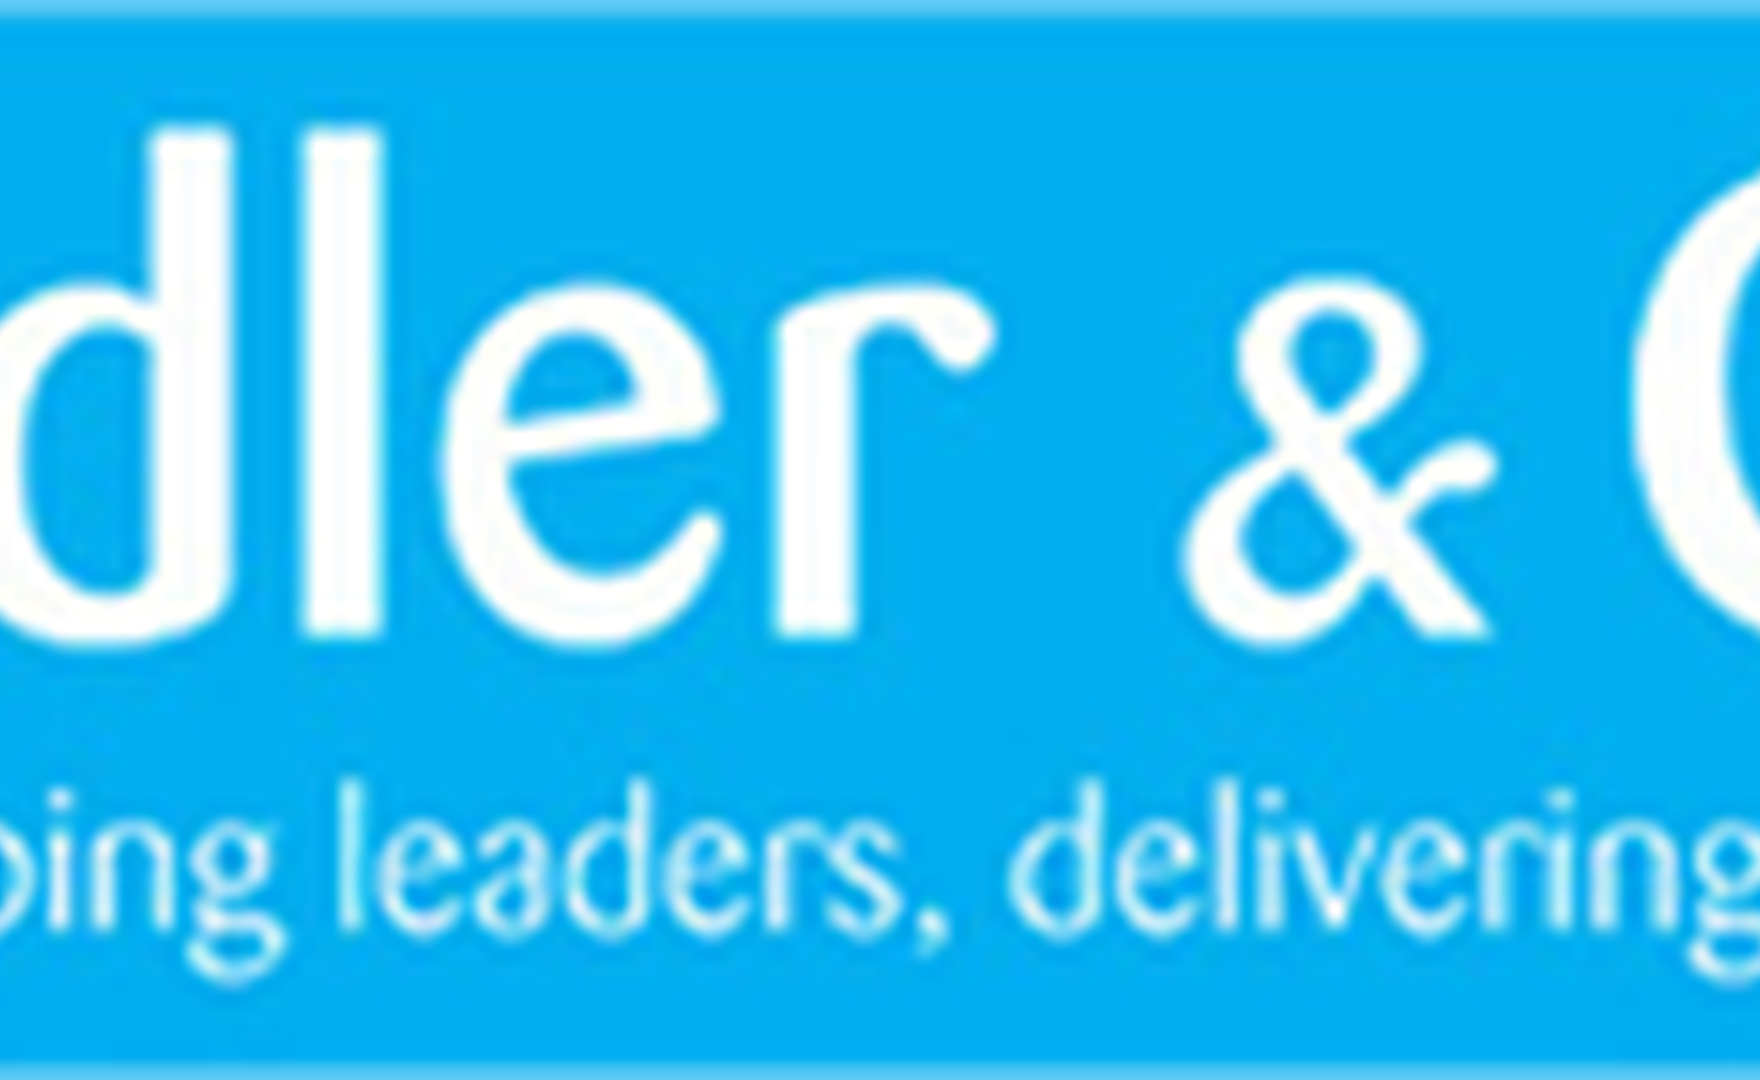 AoEC announces partnership with Ridler & Co